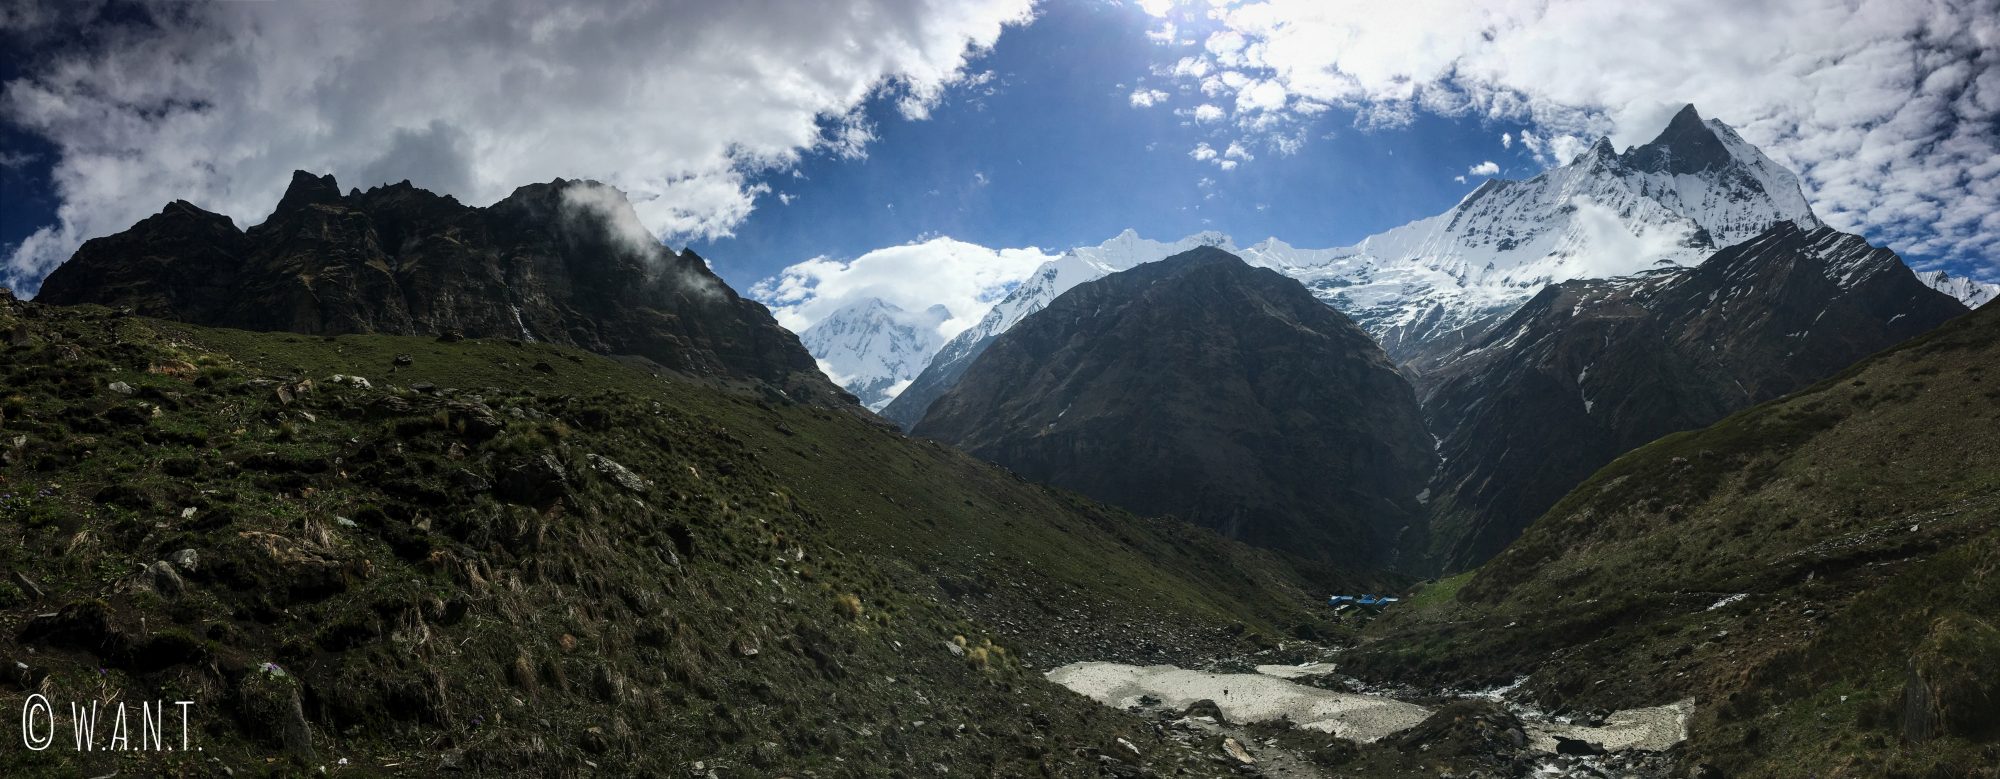 Panorama incroyable sur le Machhapuchhre et son camp de base à 3,700 mètres d'altitude